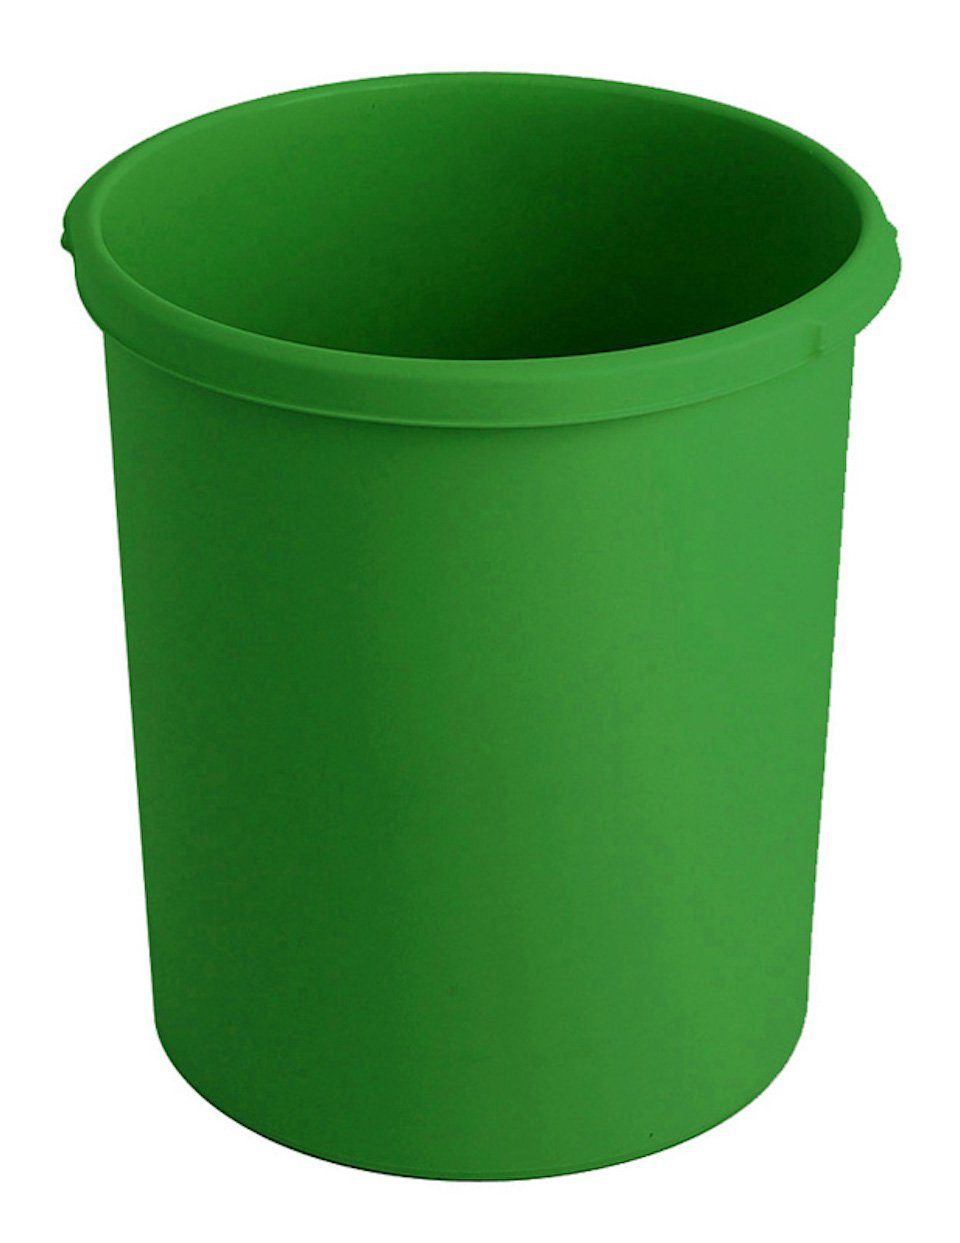 PROREGAL® Papierkorb Klassischer runder Papierkorb aus Grau Kunststoff, 18L, Grün